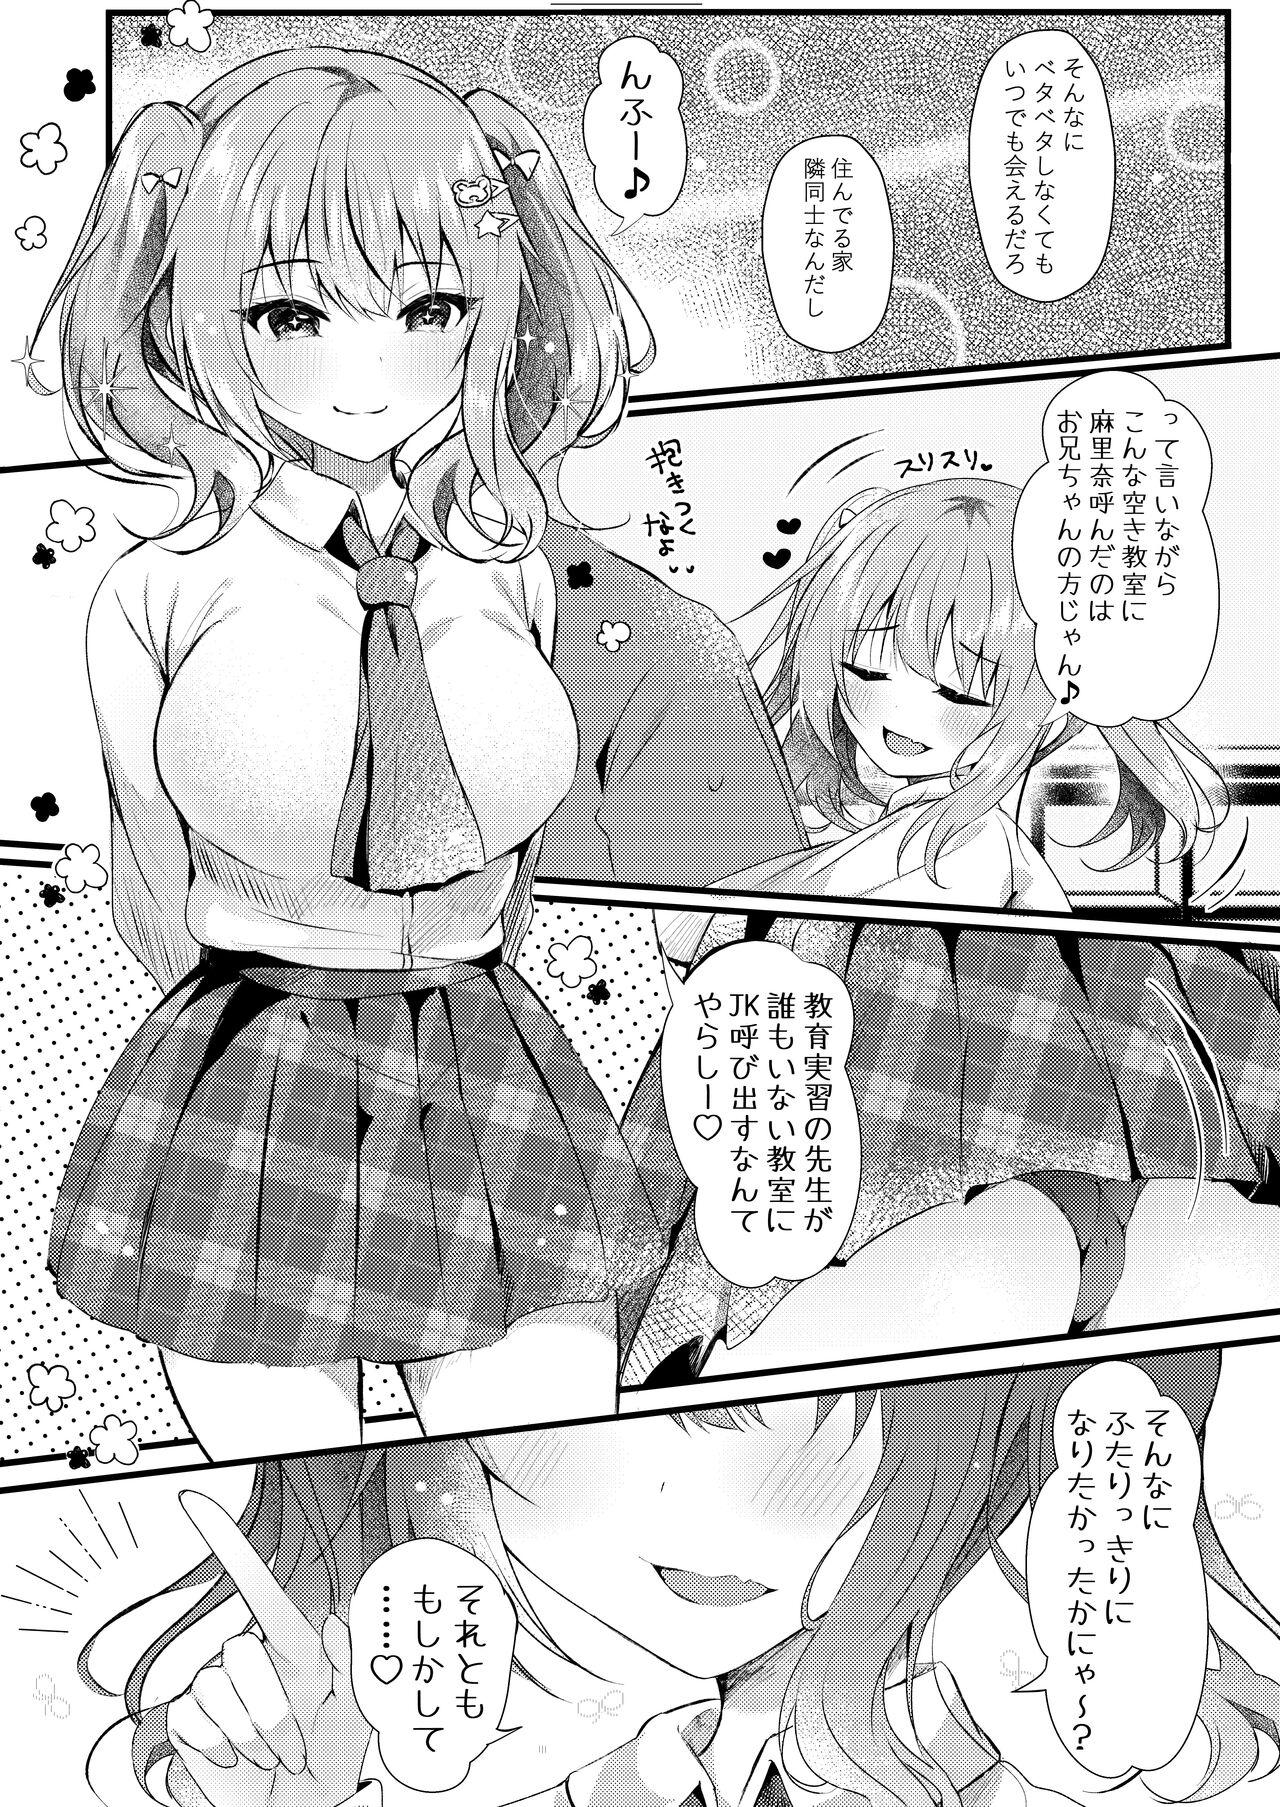 Rub Onii-chan no Yume no Tame ni - Original Sapphicerotica - Page 6